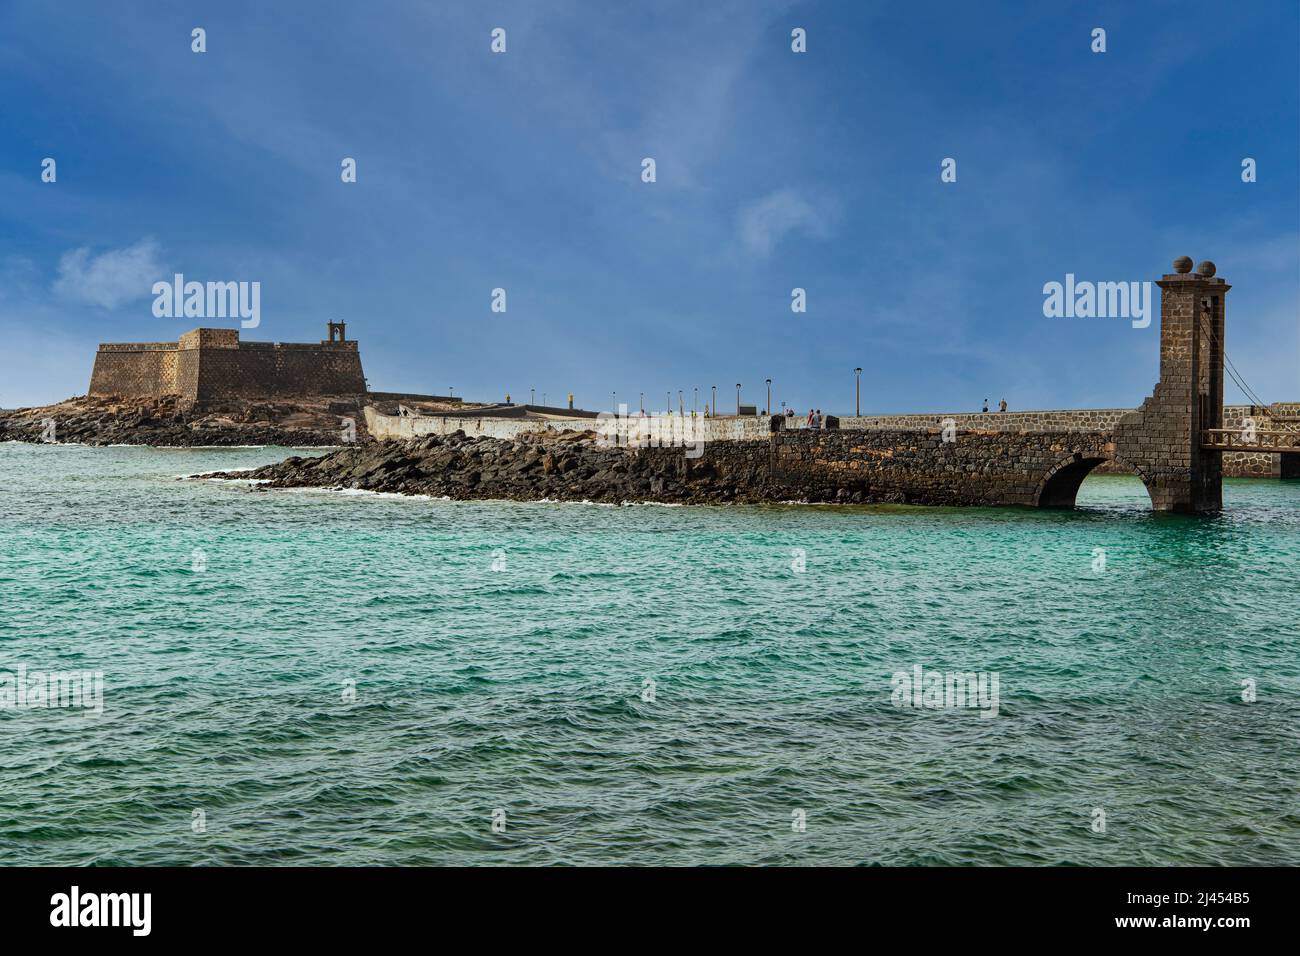 Kastell, Castillo de San Gabriel, Arrecife, Hauptstadt der Insel Lanzarote, kanarische Inseln, Kanaren, Spanien Stock Photo